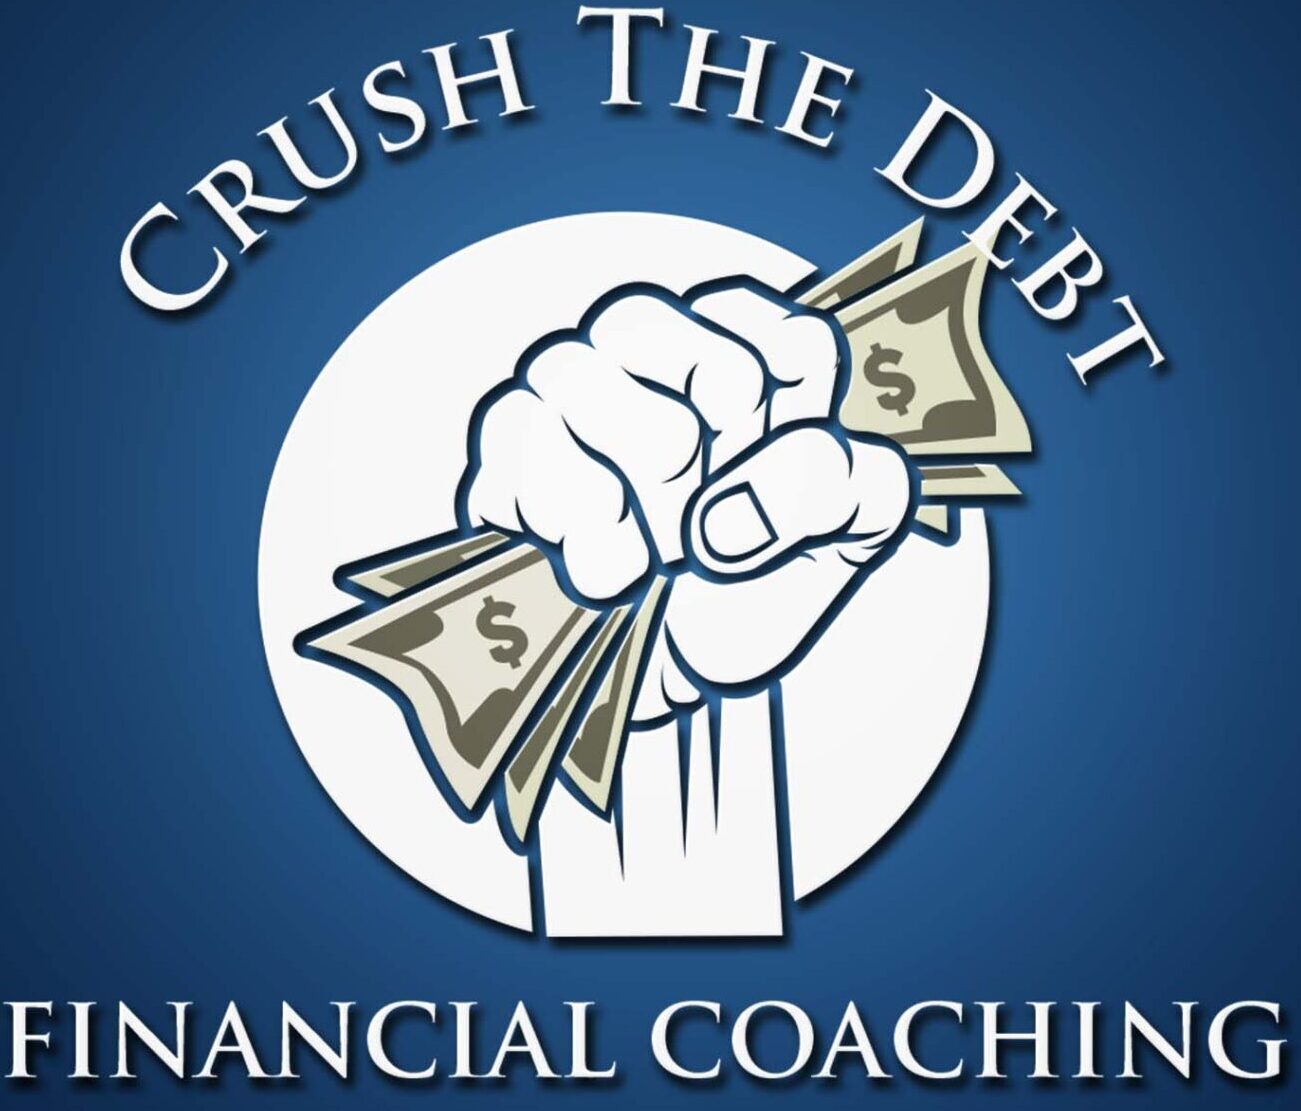 Crush the Debt Coaching- Financial Coaching